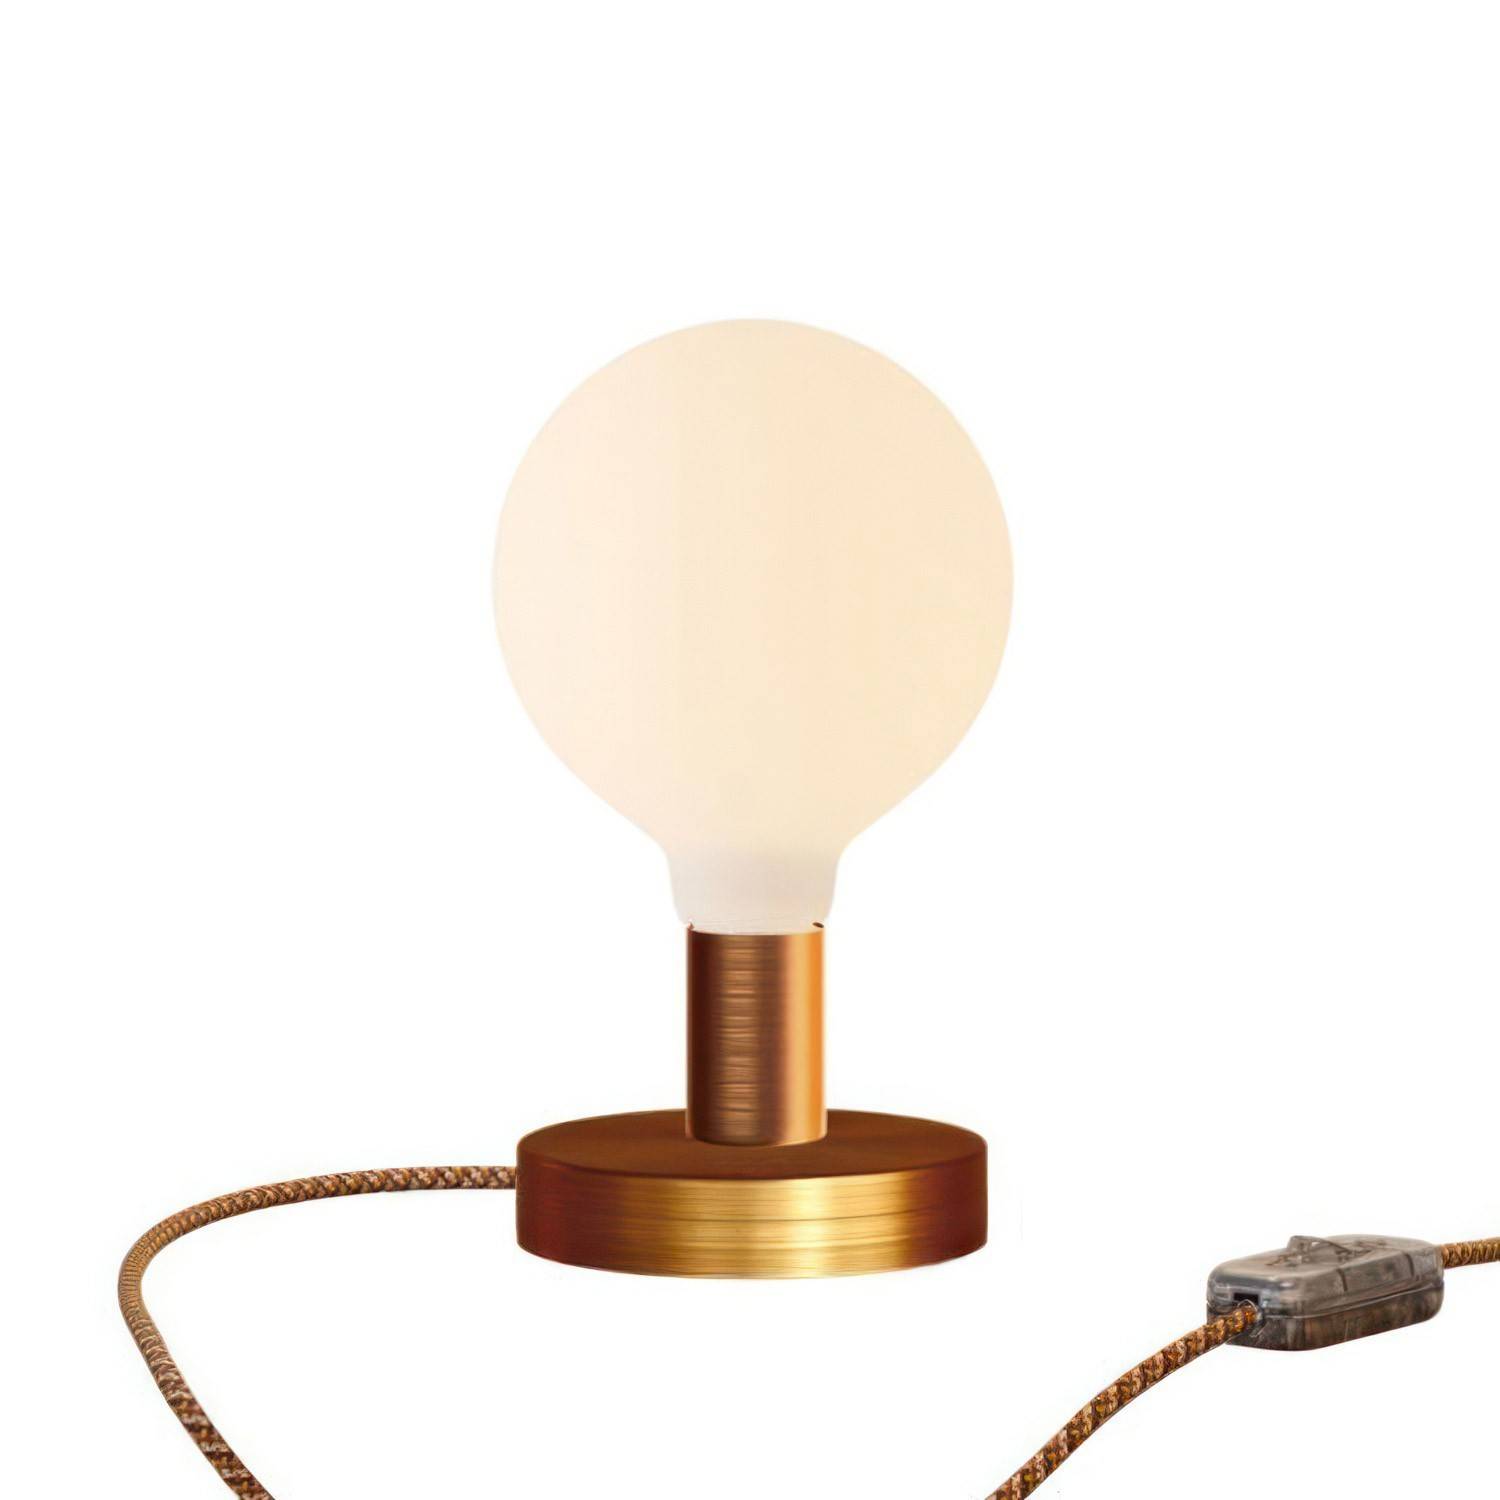 Lampa de masă din metal Posaluce Globe cu priză cu două pini.